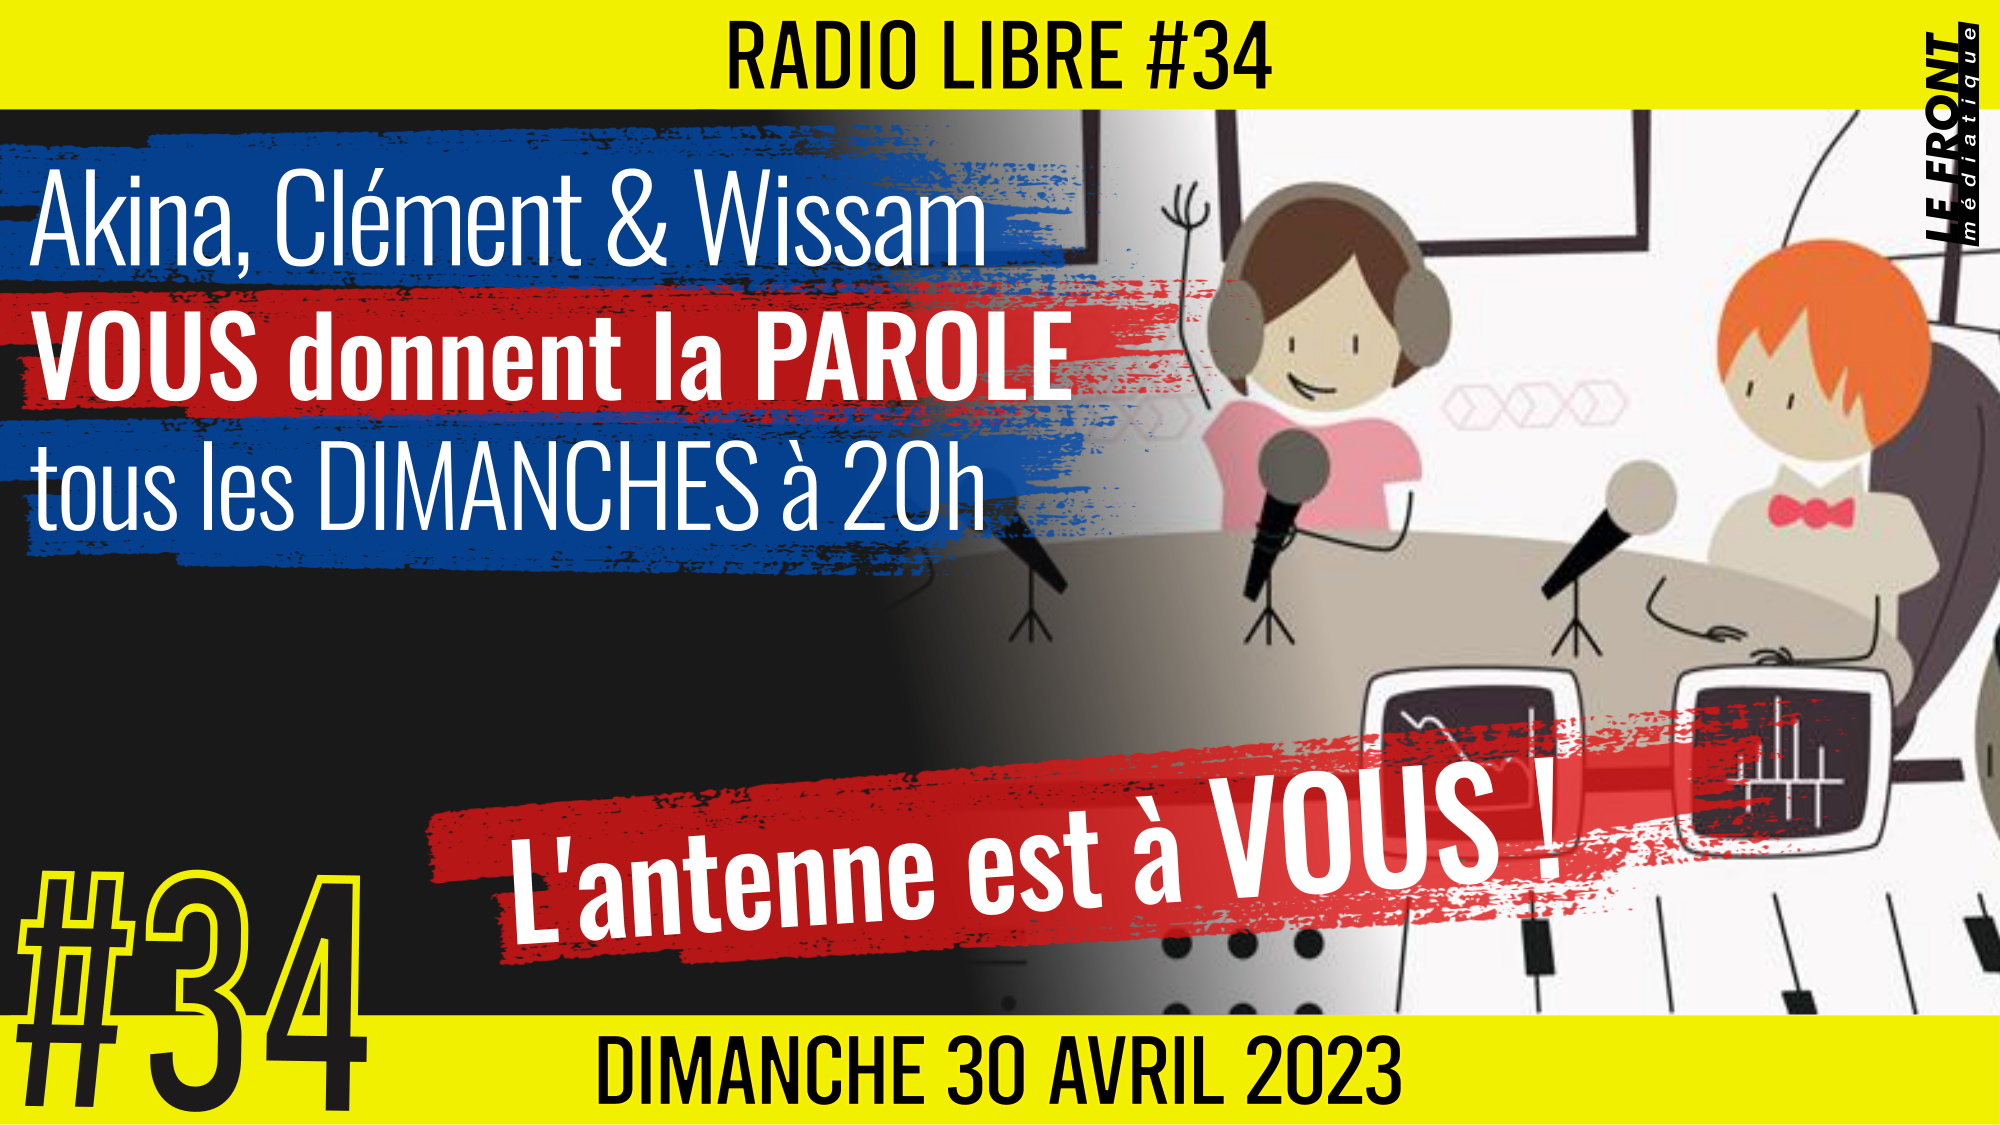 📟 RADIO LIBRE #34 🎙La Libre Antenne est à VOUS ! 🗣 Akina, Clém & Wissam 📆 30-04-2023